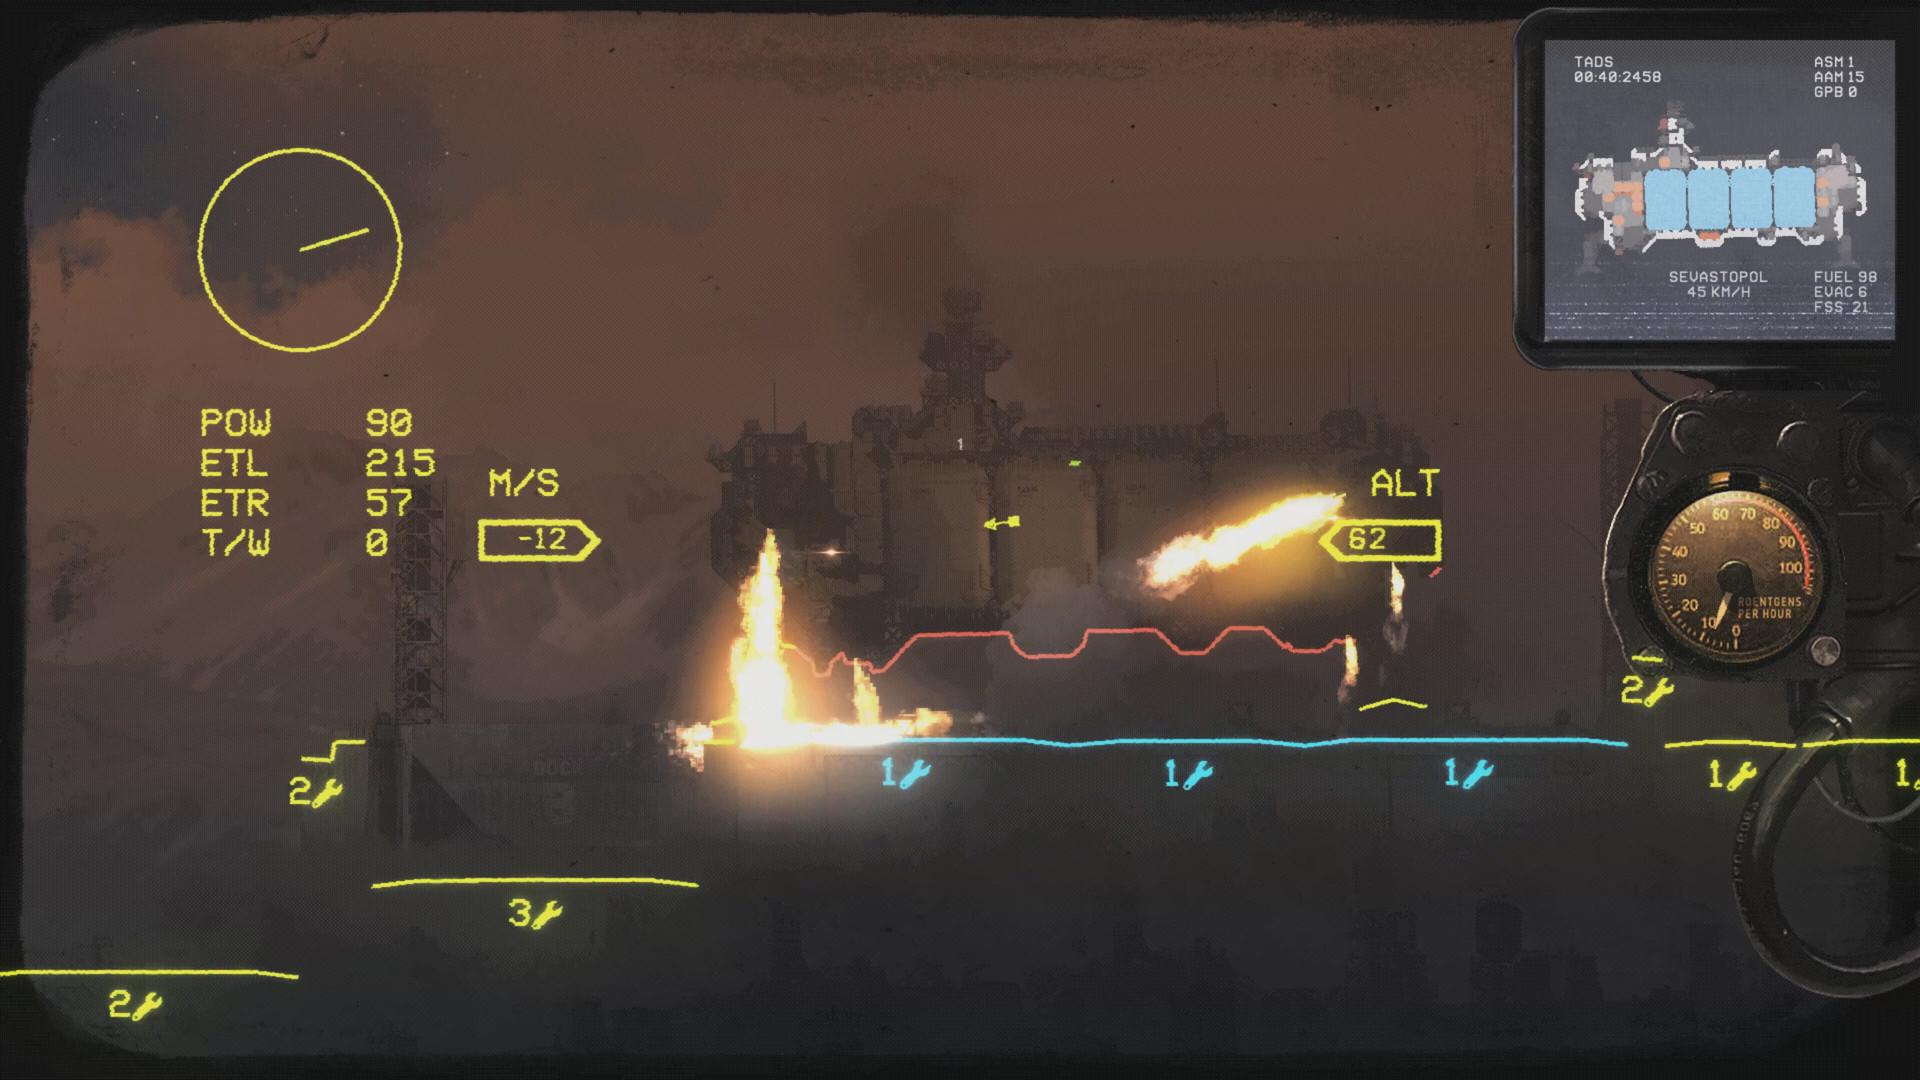 Screenshot №4 from game HighFleet